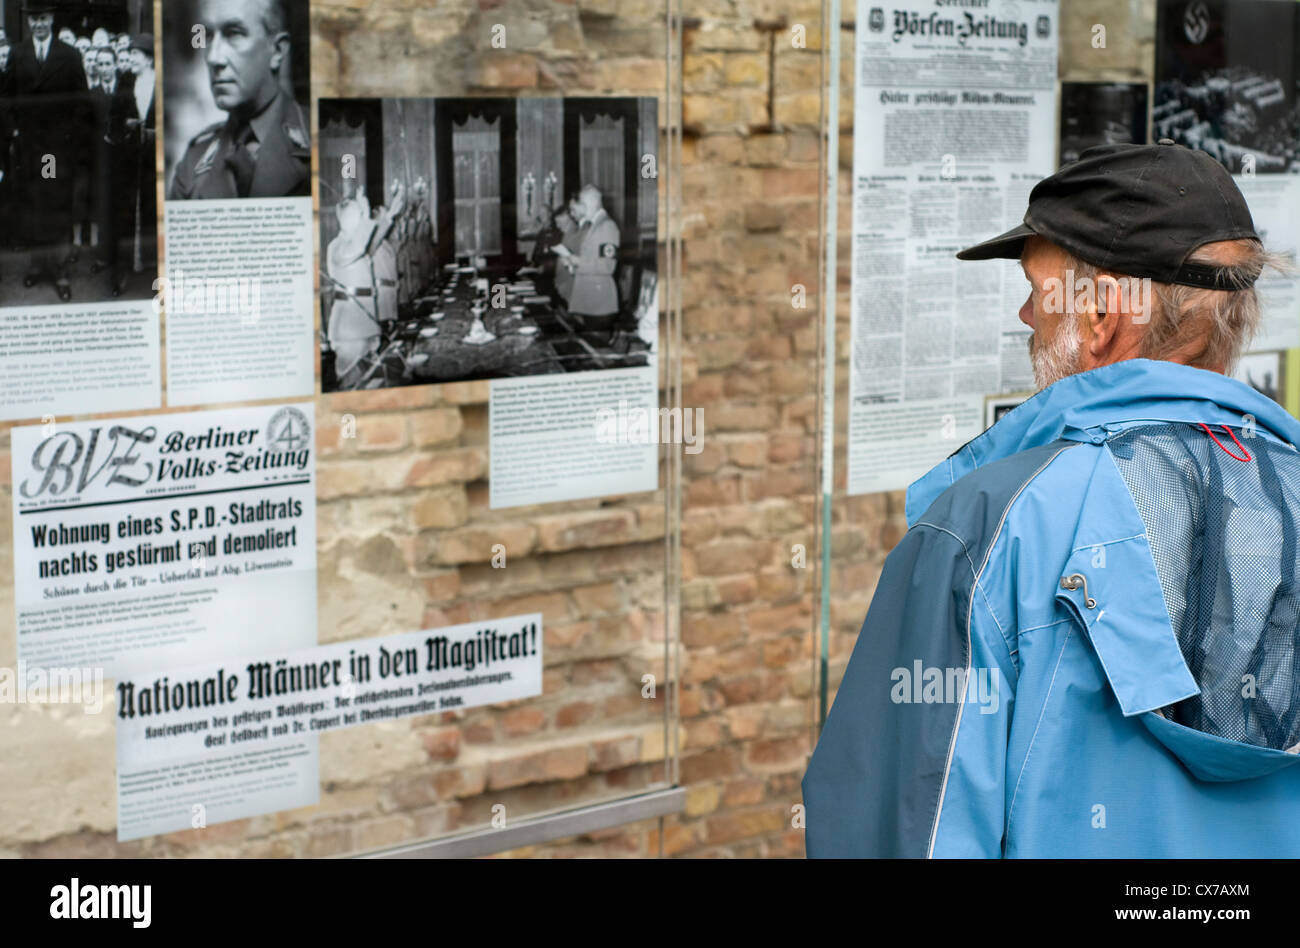 Un visiteur à la topographie de la terreur musée en plein air à Berlin, Allemagne, qui détaille l'histoire de la répression sous les nazis Banque D'Images